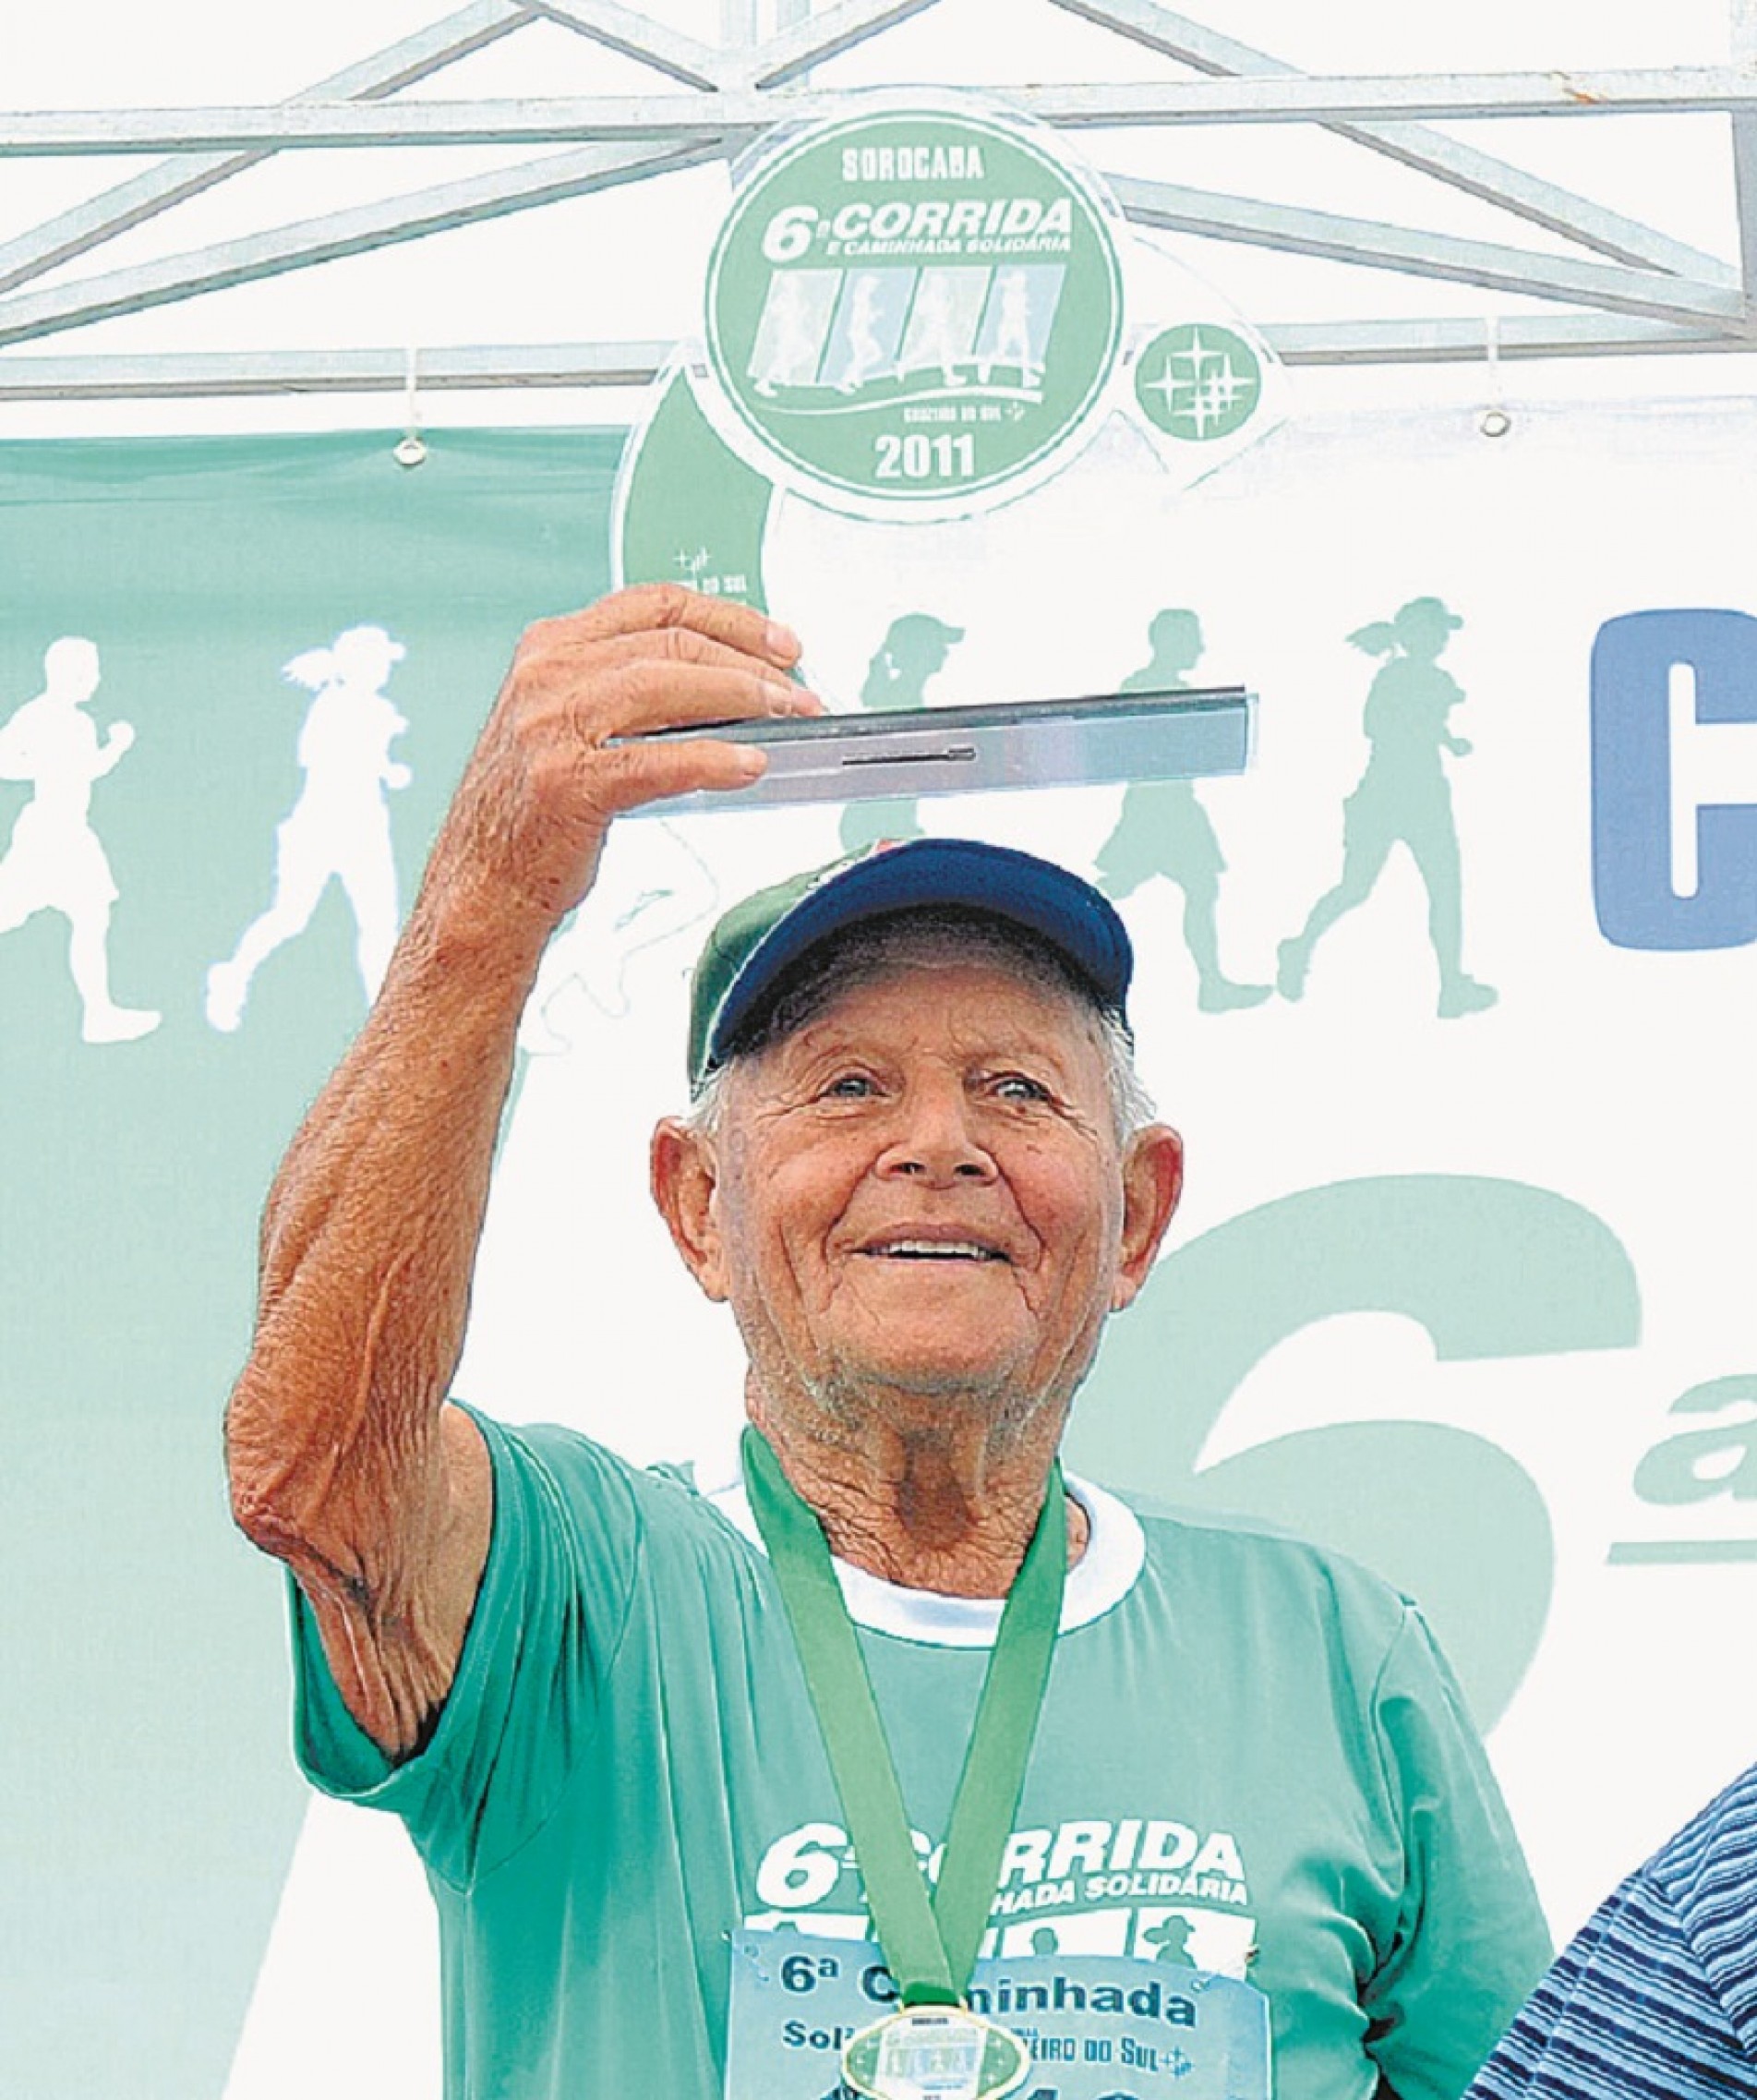 Com 92 anos, Toniquinho foi o corredor mais idoso na Corrida Solidária de 2007